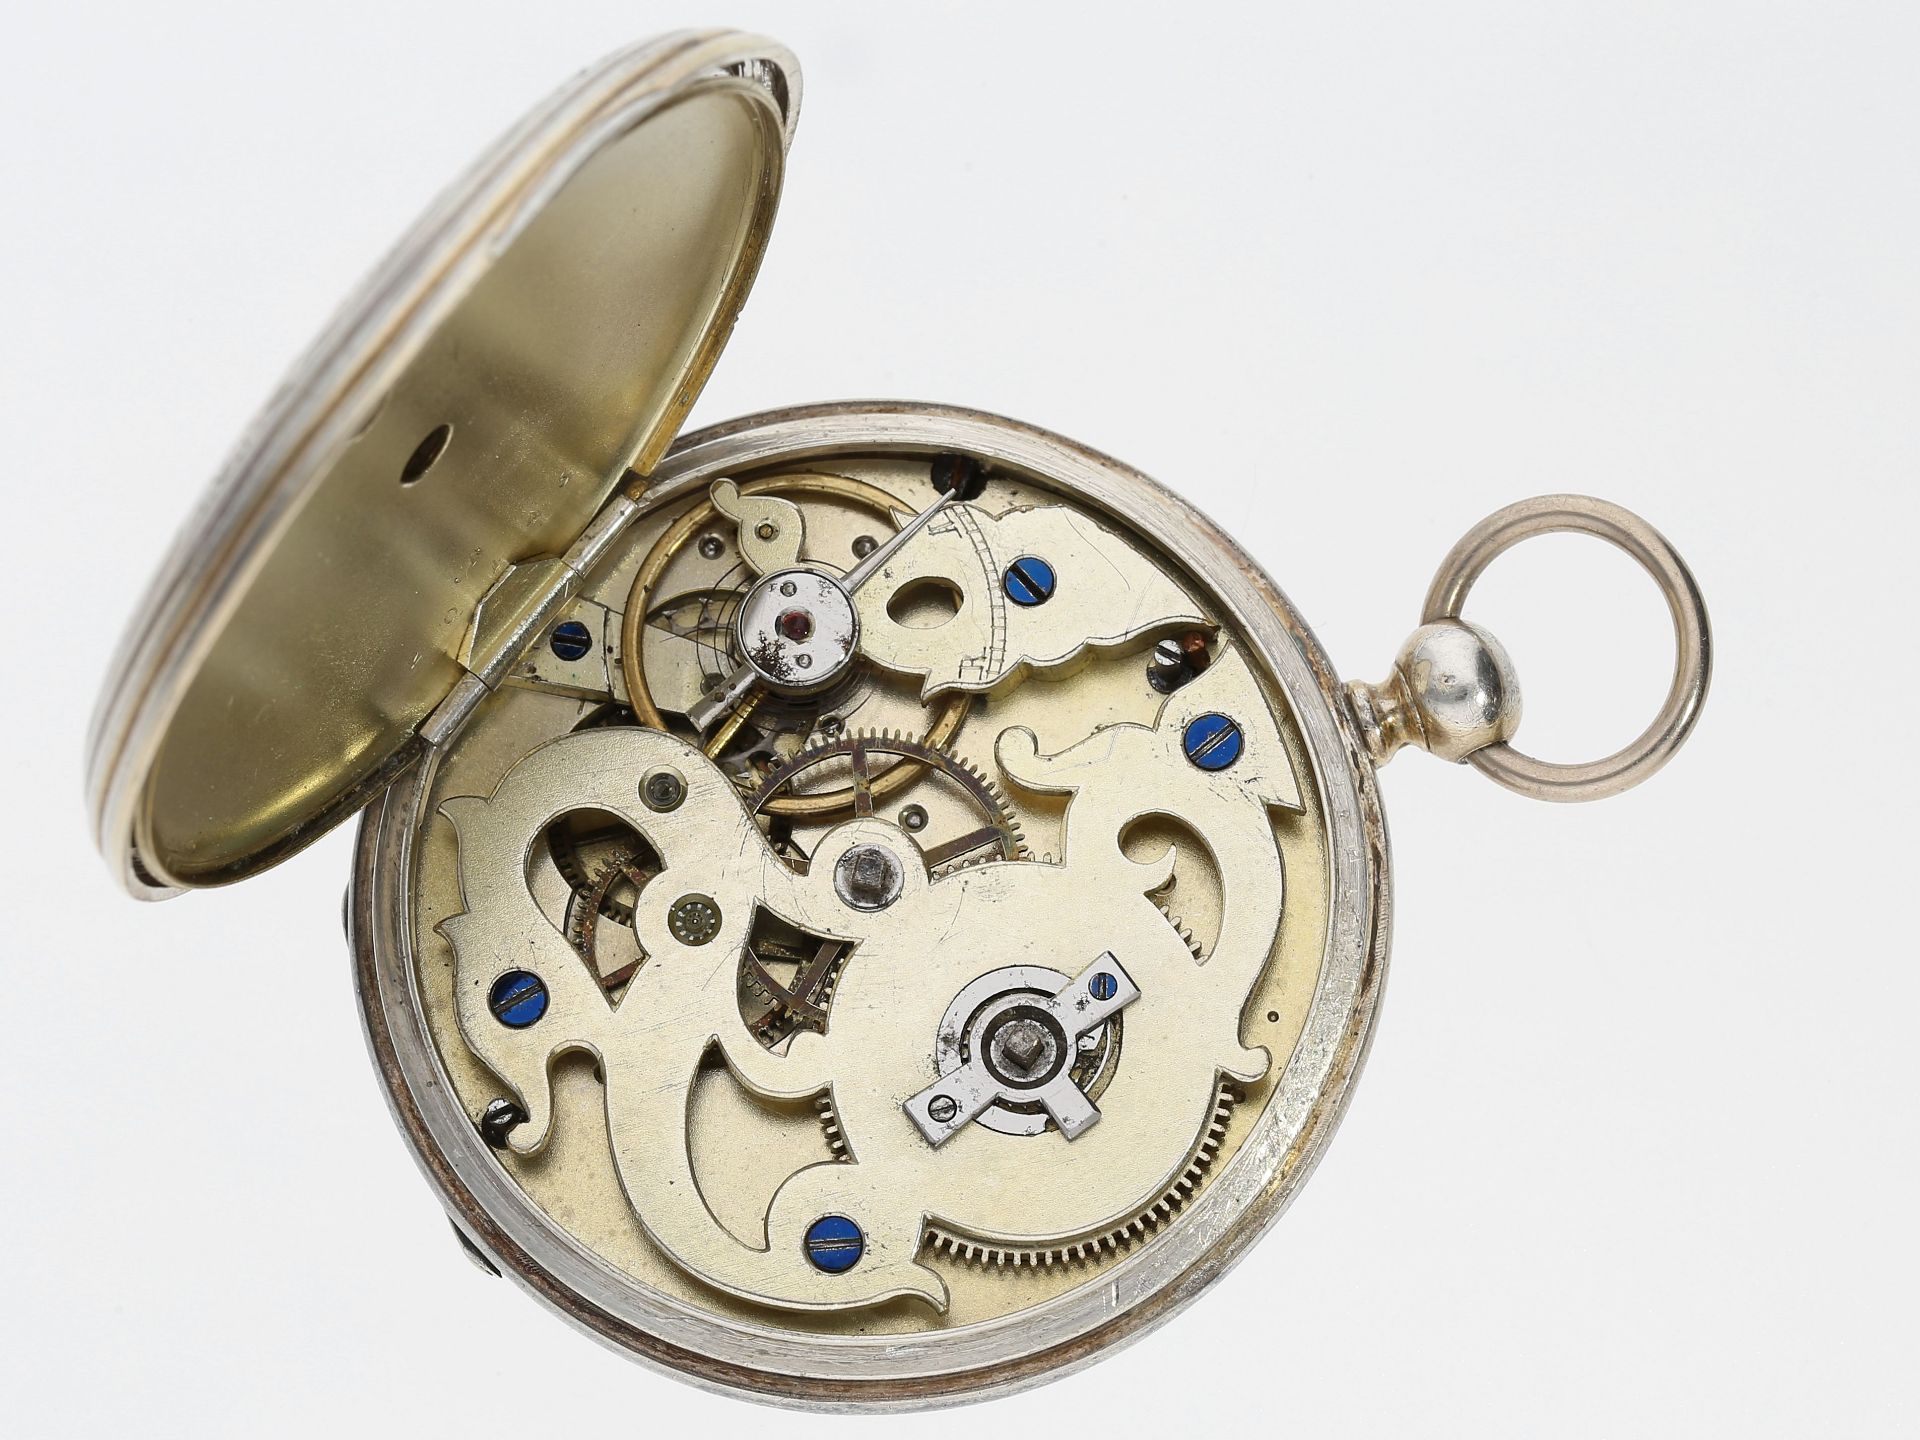 Taschenuhr: sehr seltene, ganz frühe Vacheron Taschenuhr mit ungewöhnlichem Werksaufbau und Kompass - Image 4 of 4